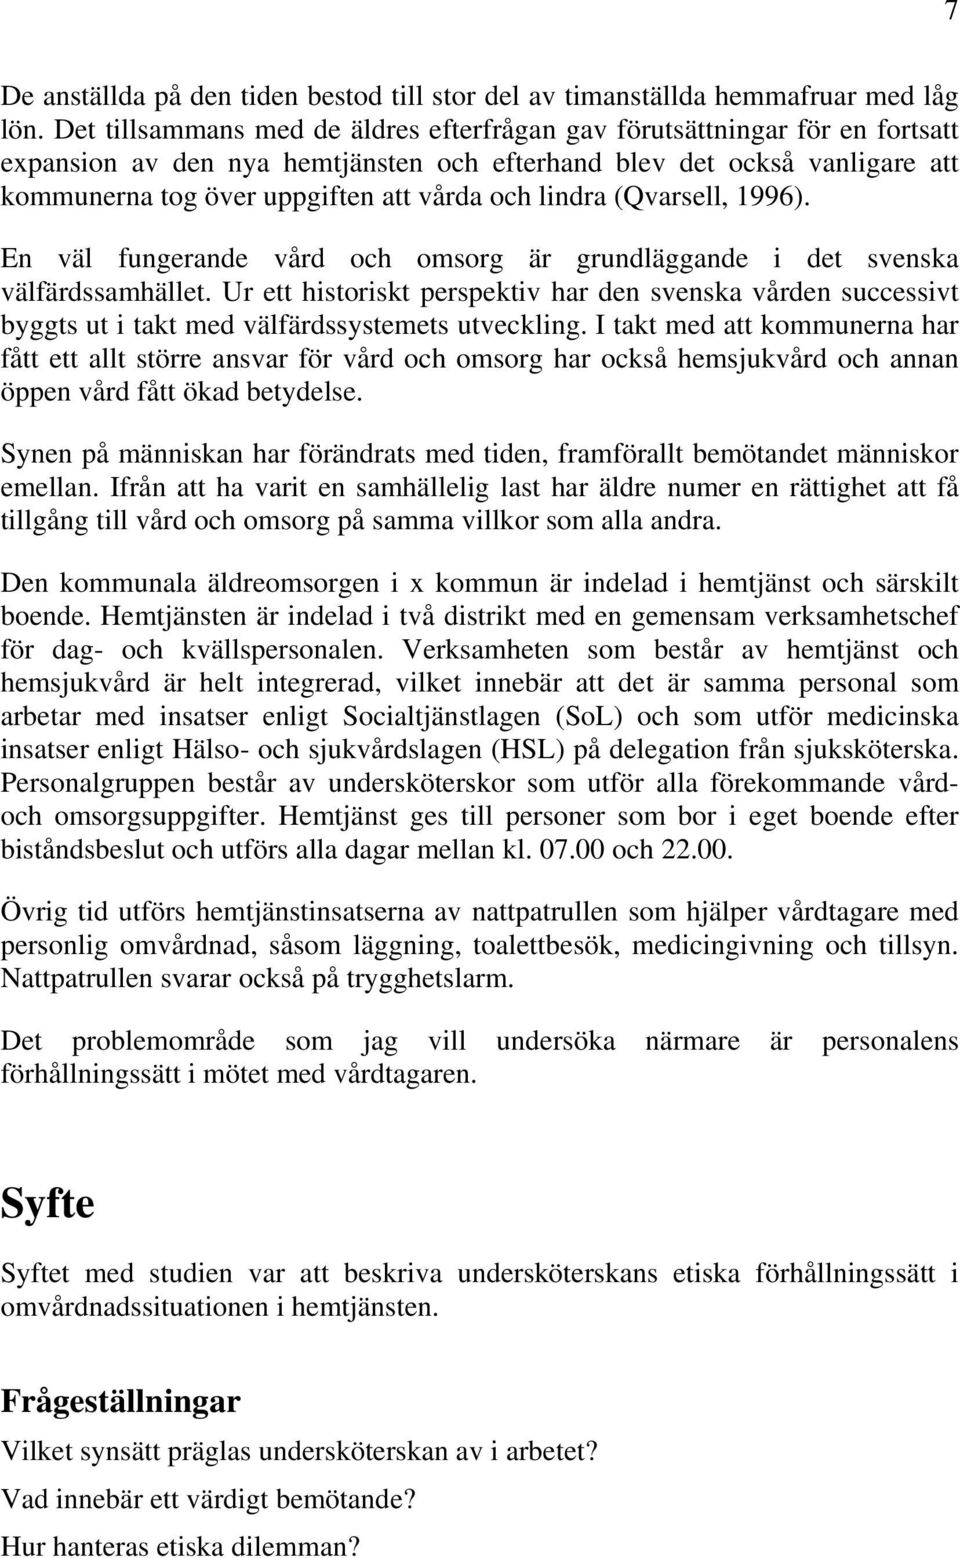 lindra (Qvarsell, 1996). En väl fungerande vård och omsorg är grundläggande i det svenska välfärdssamhället.